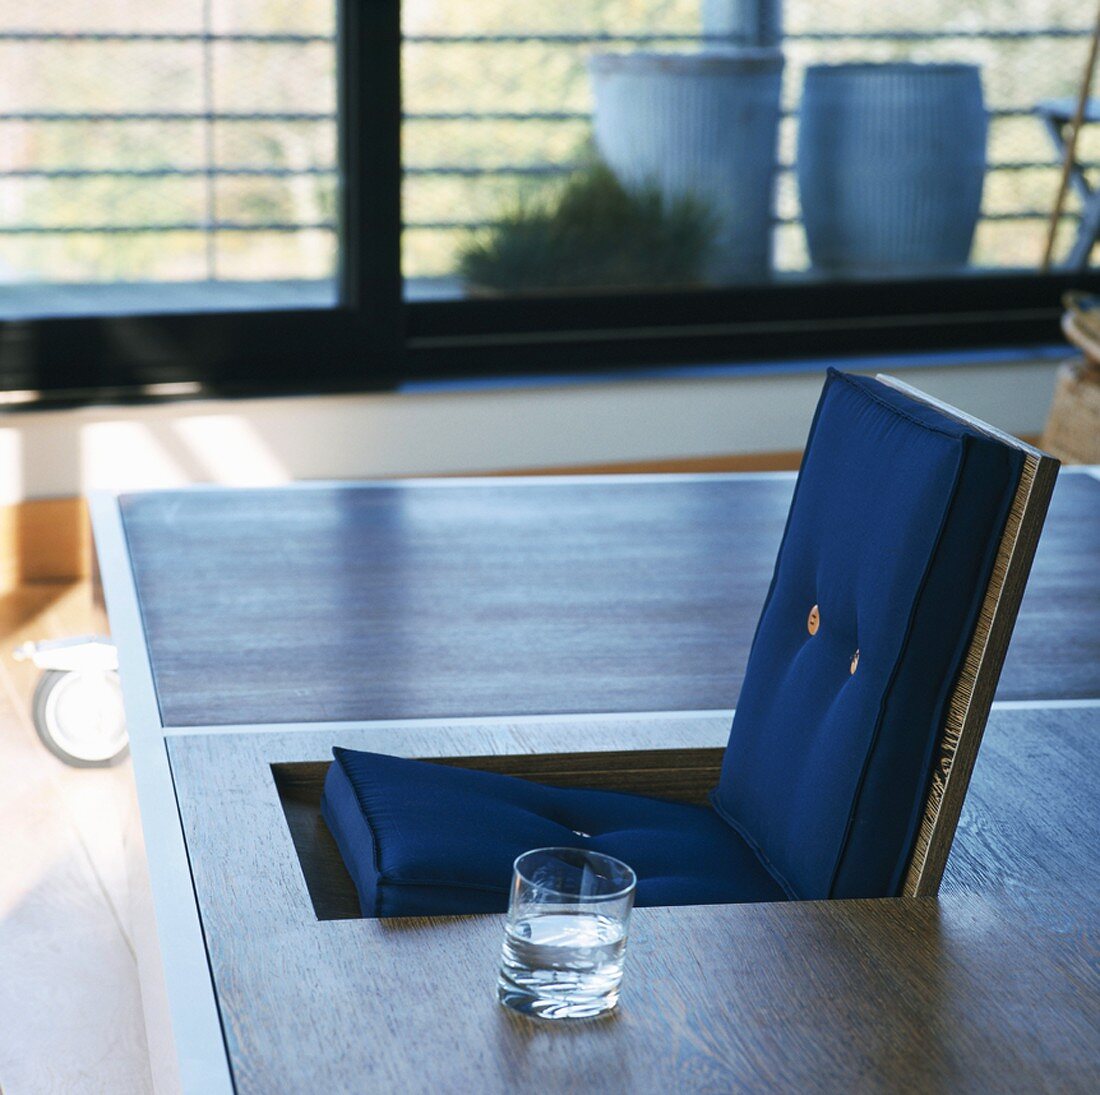 Designertisch mit Wasserglas neben integriertem Klappsitz, im Hintergrund moderne, grosse Schiebetüren